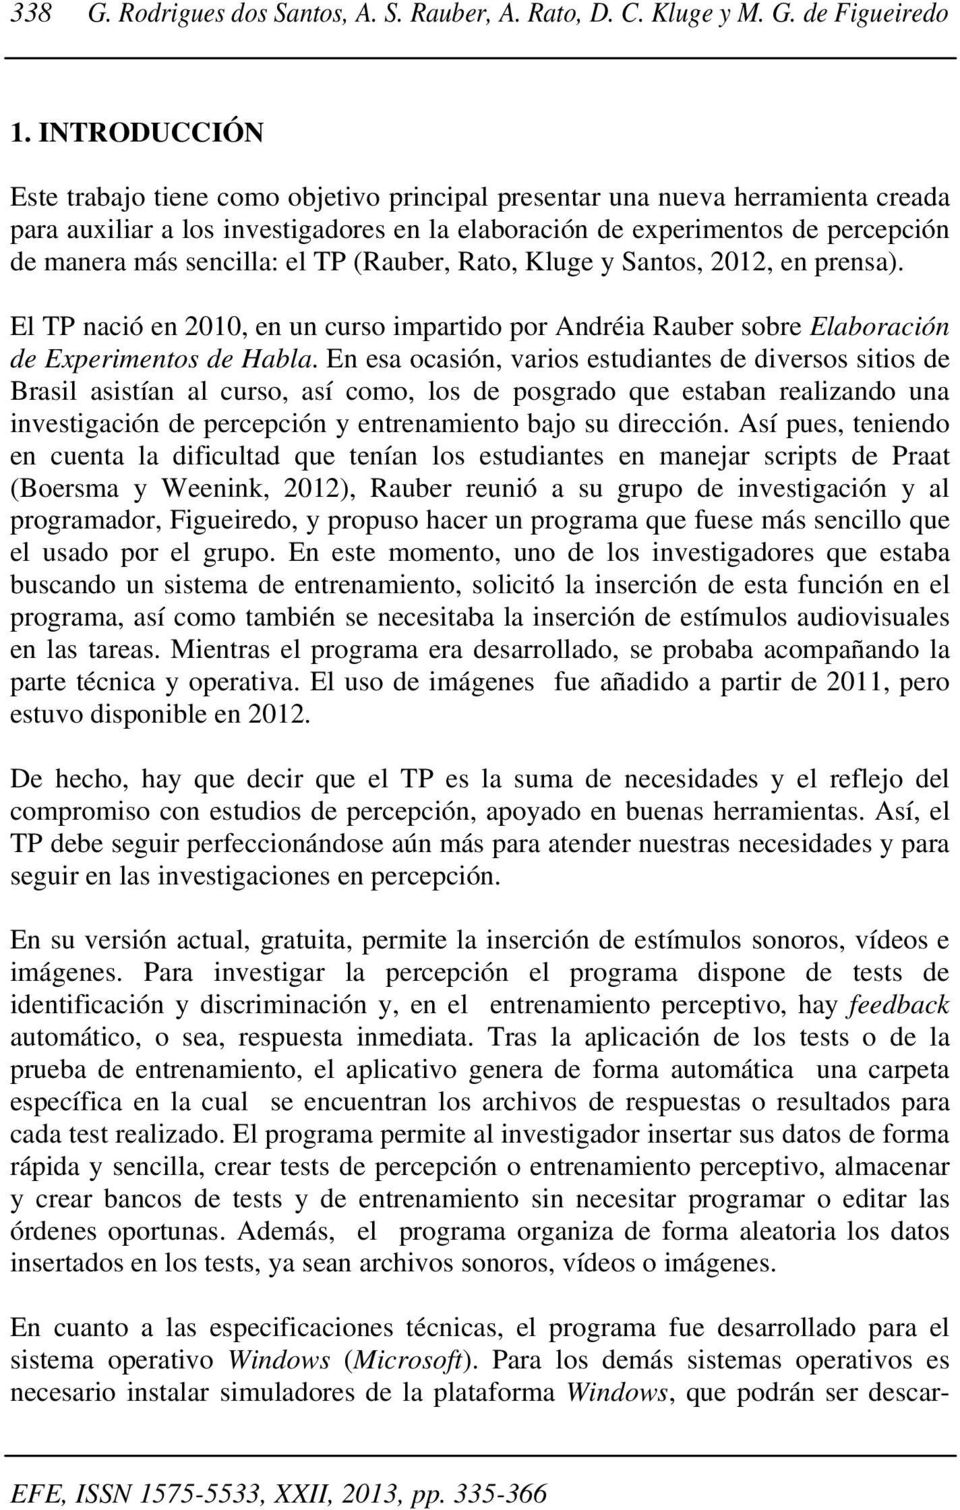 sencilla: el TP (Rauber, Rato, Kluge y Santos, 2012, en prensa). El TP nació en 2010, en un curso impartido por Andréia Rauber sobre Elaboración de Experimentos de Habla.